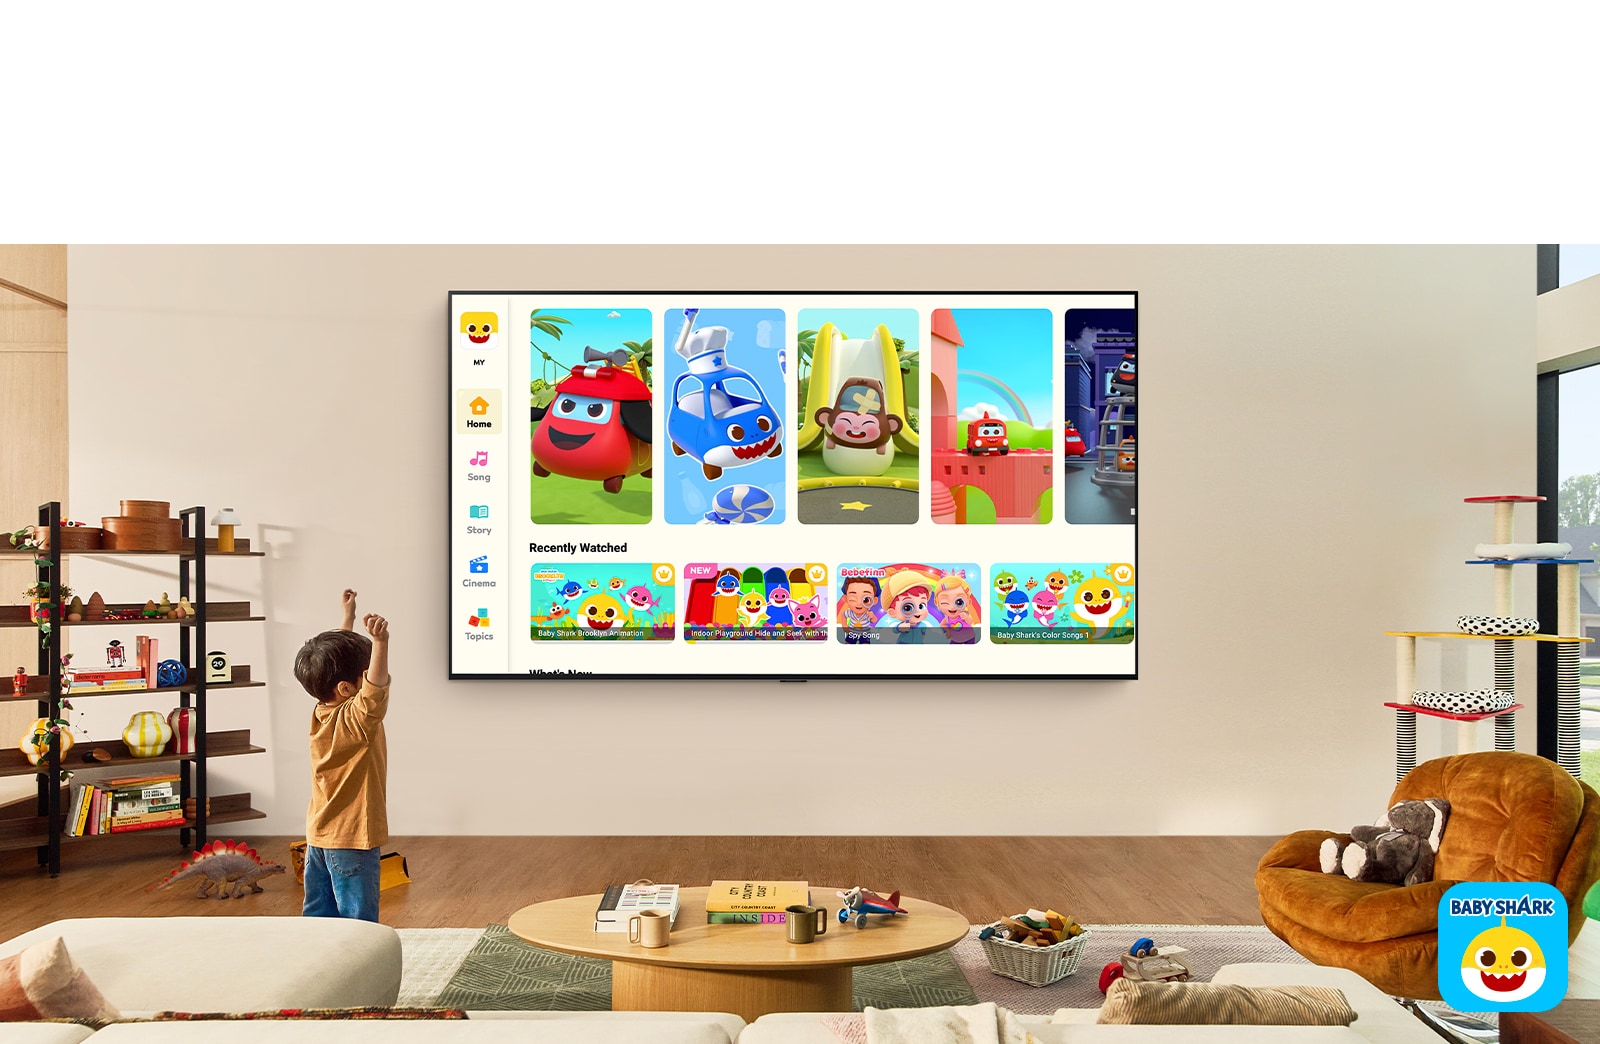 Mali dečak gleda Pinkfong na LG TV uređaju na zidu u dnevnom prostoru sa dečijim igračkama. 